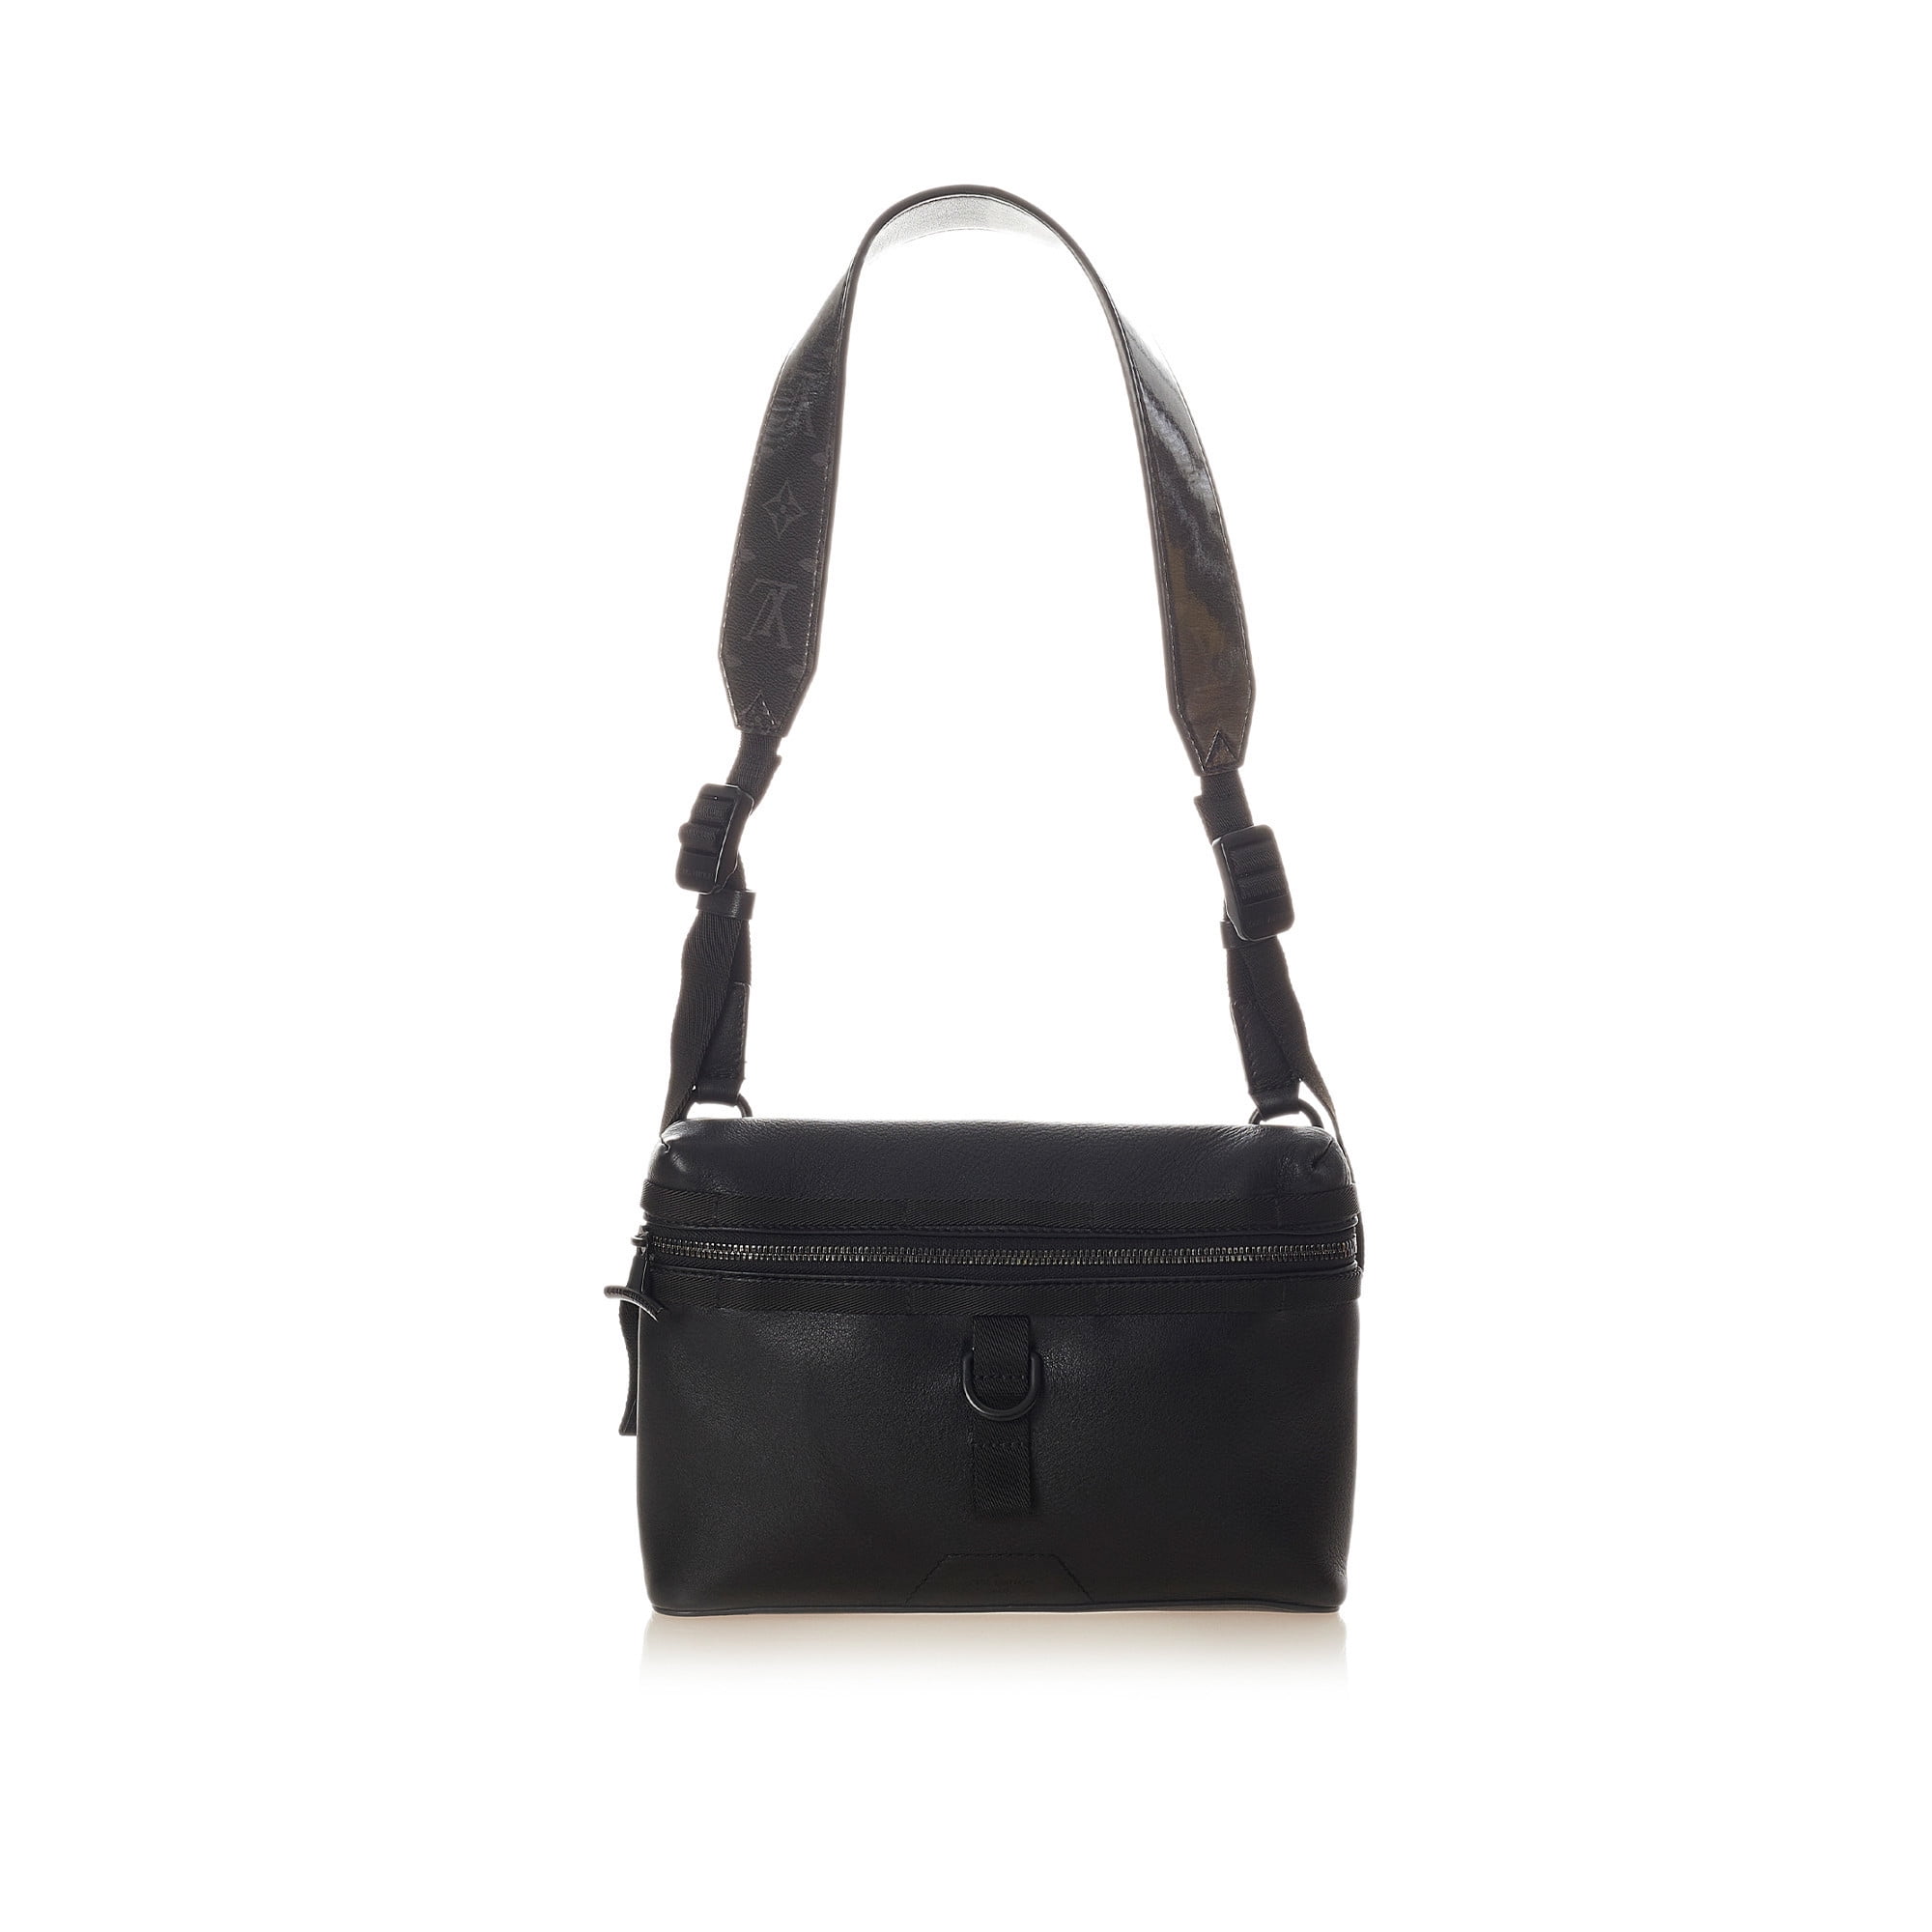 Unisex Pre-Owned Authenticated Louis Vuitton Monogram Glaze Messenger PM  Pvc Plastic Brown Crossbody Bag 